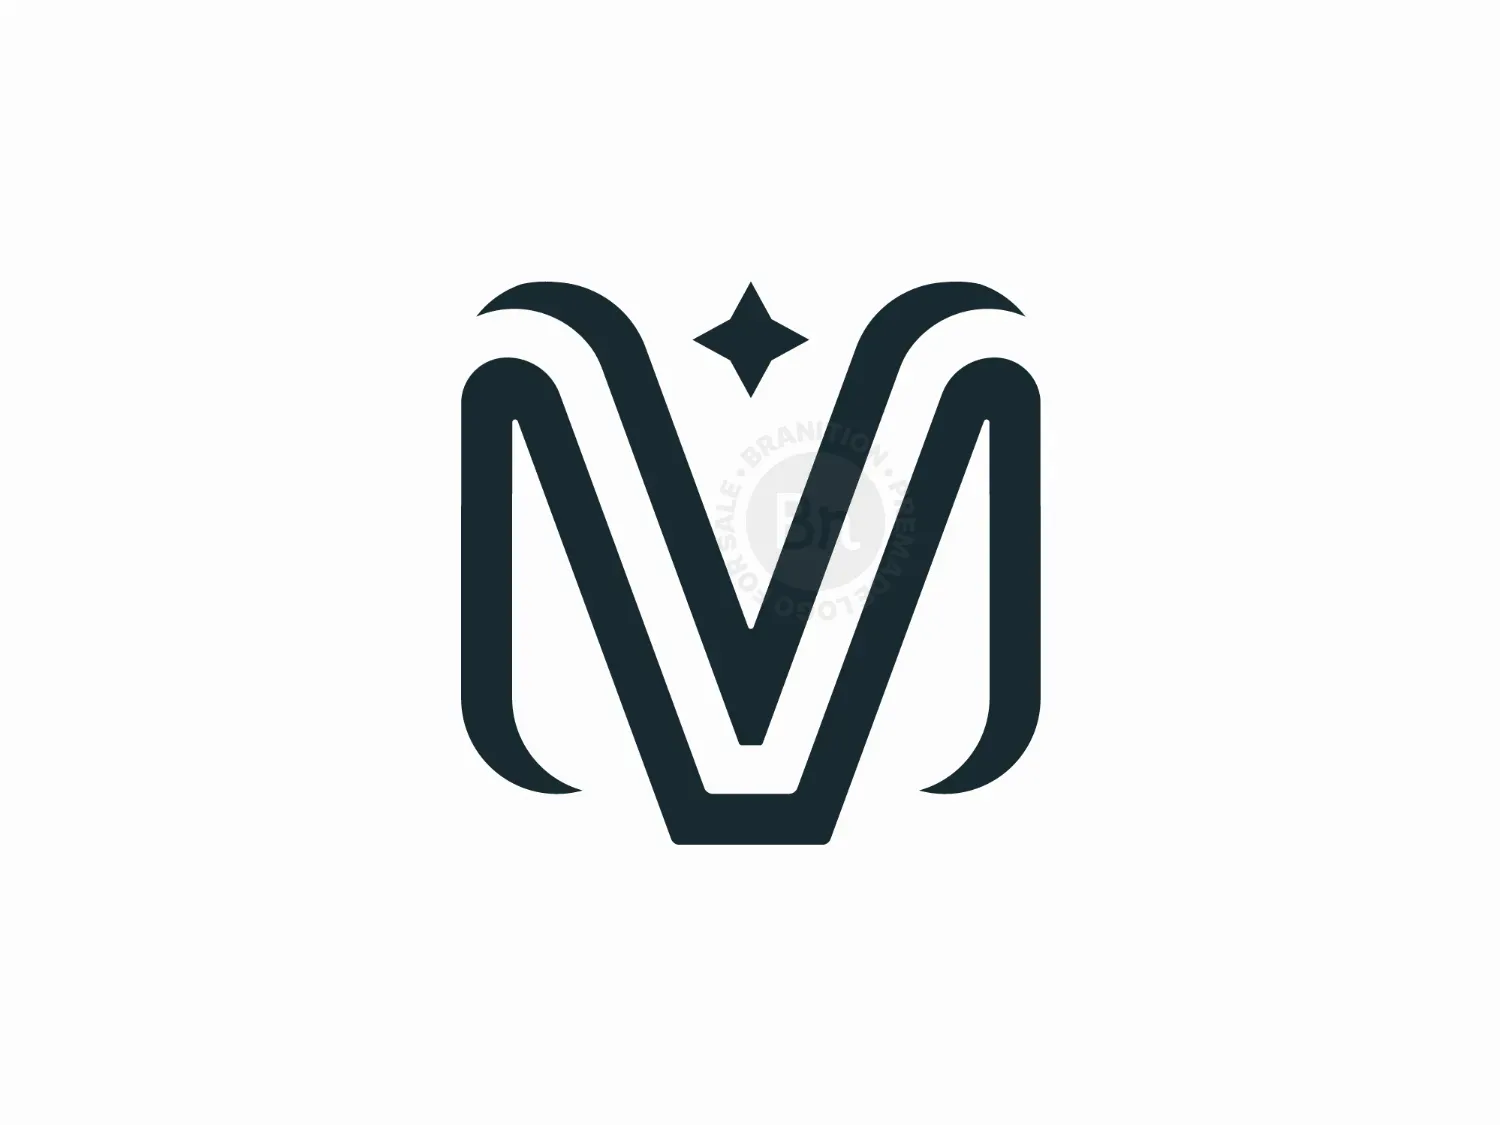 MV Or VM Letter Logos